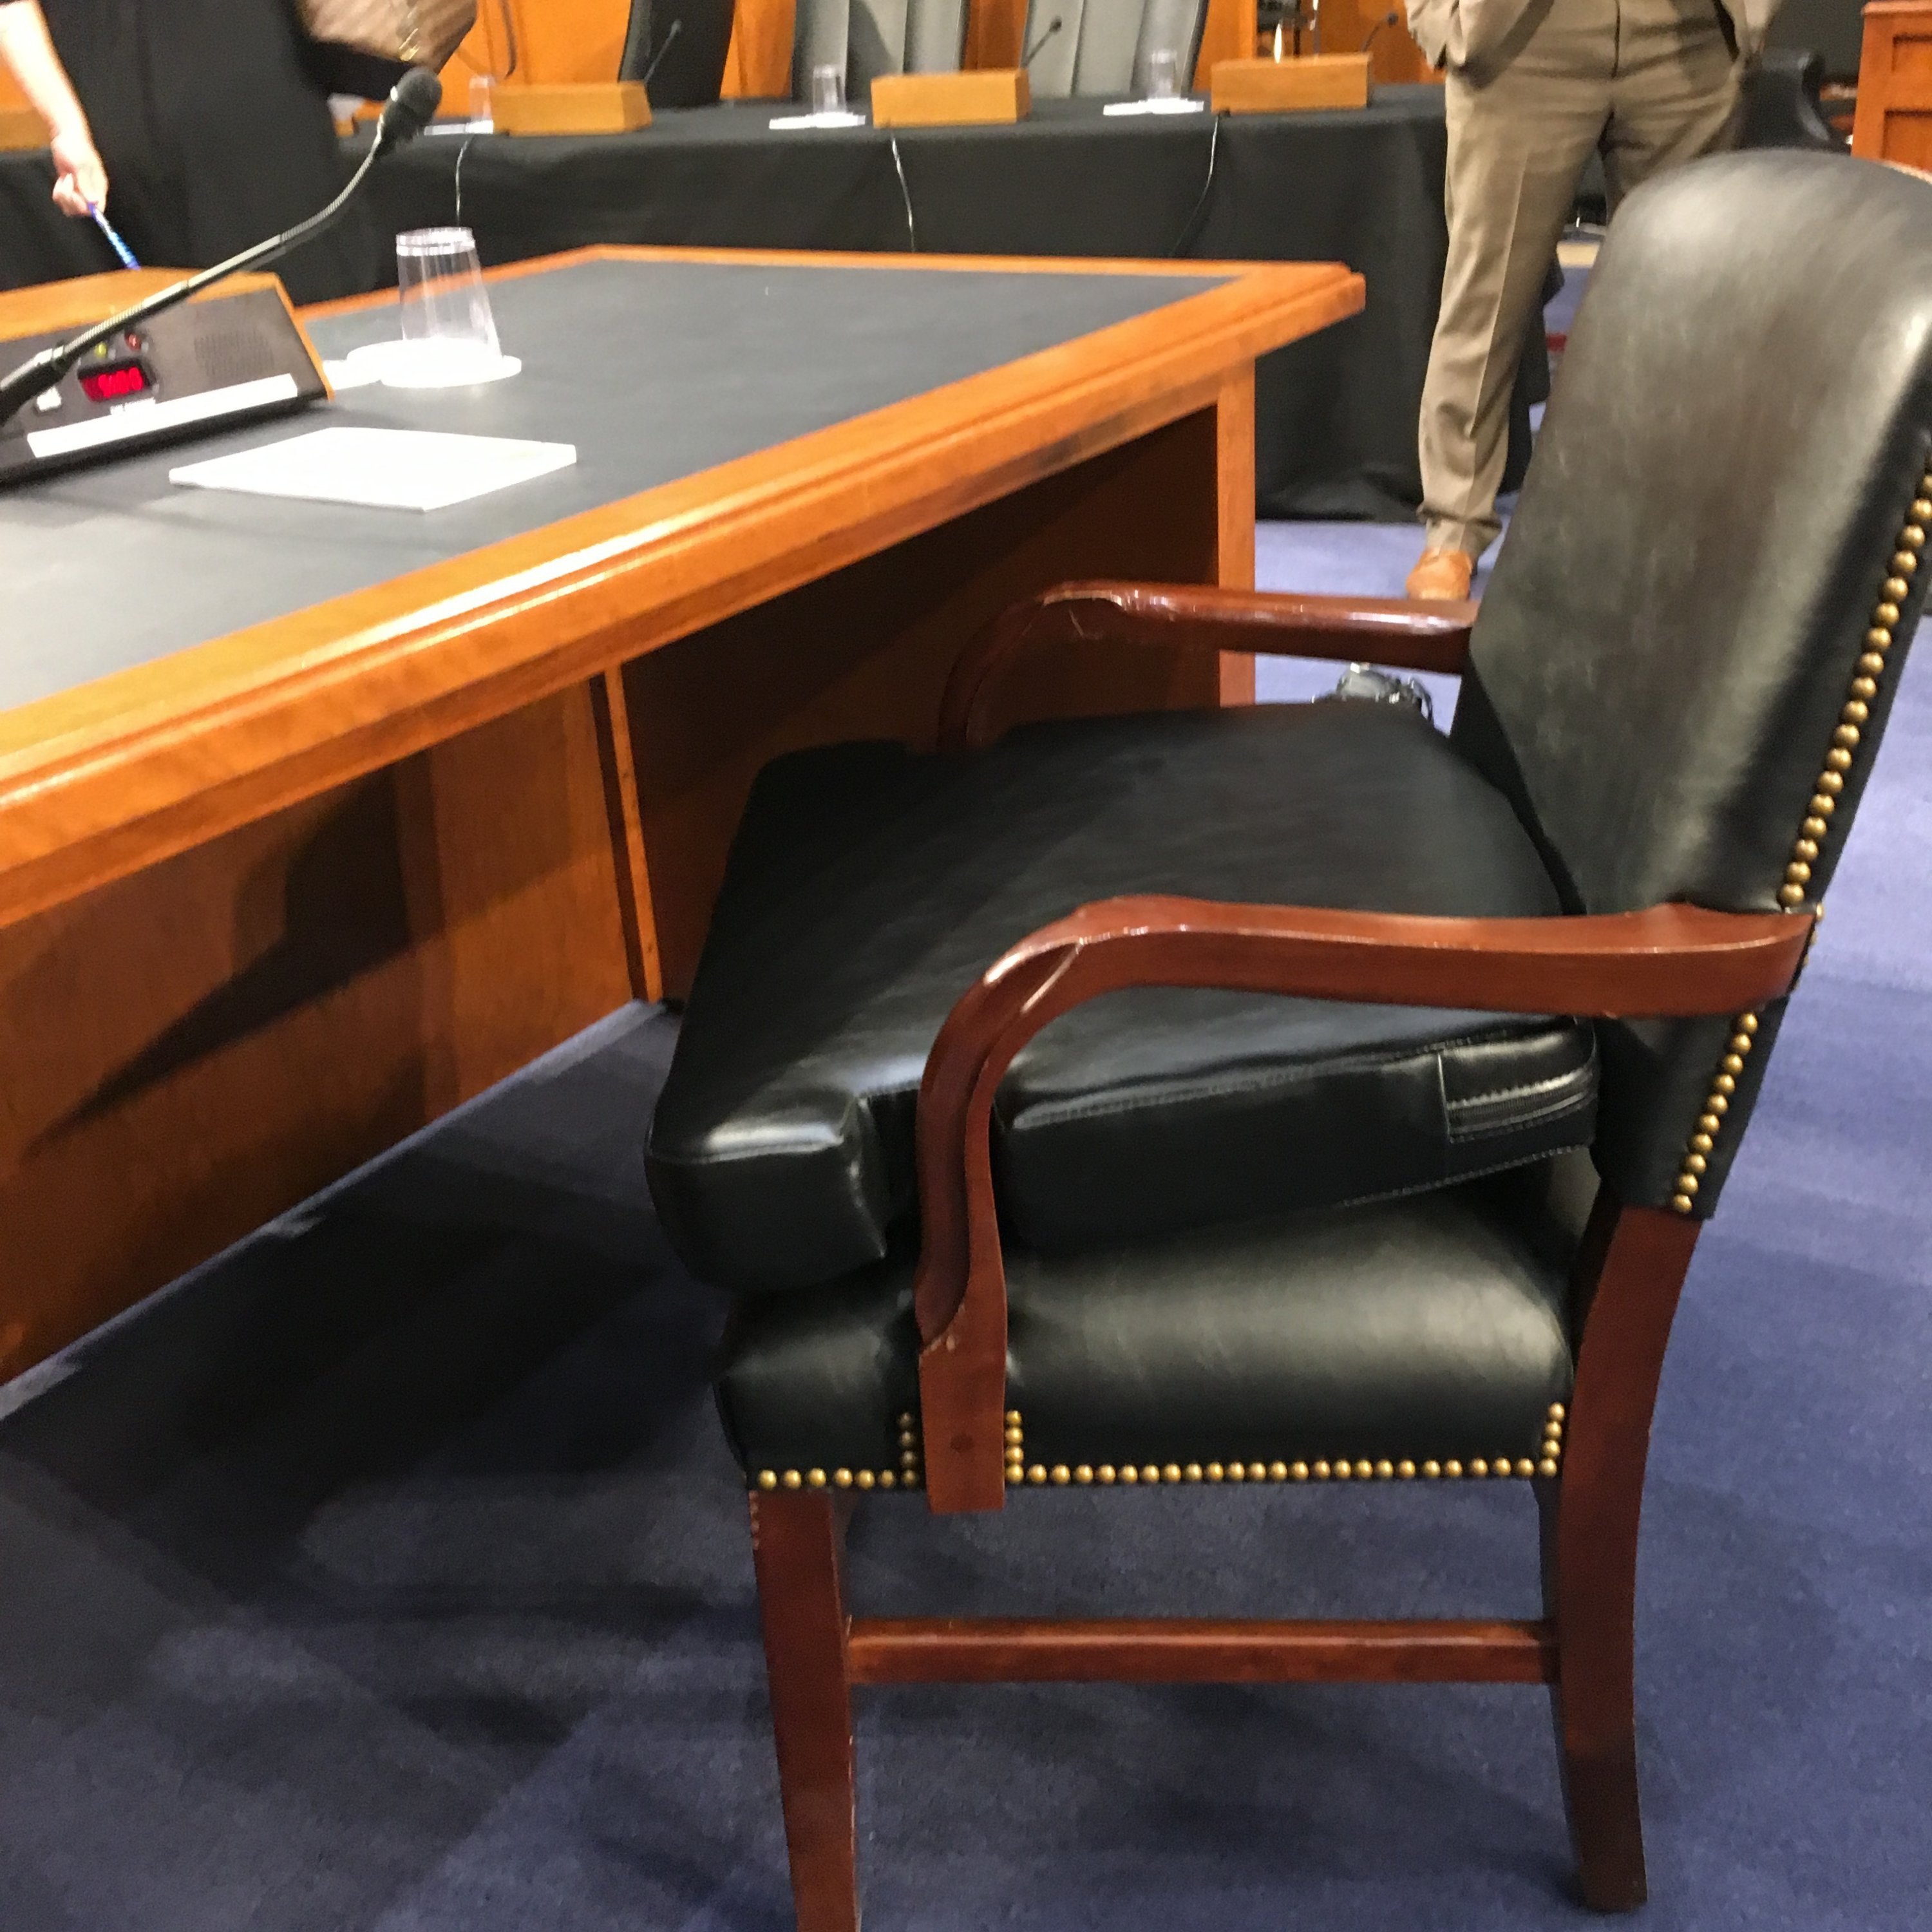 mark-zuckerberg-chair-senate.jpg